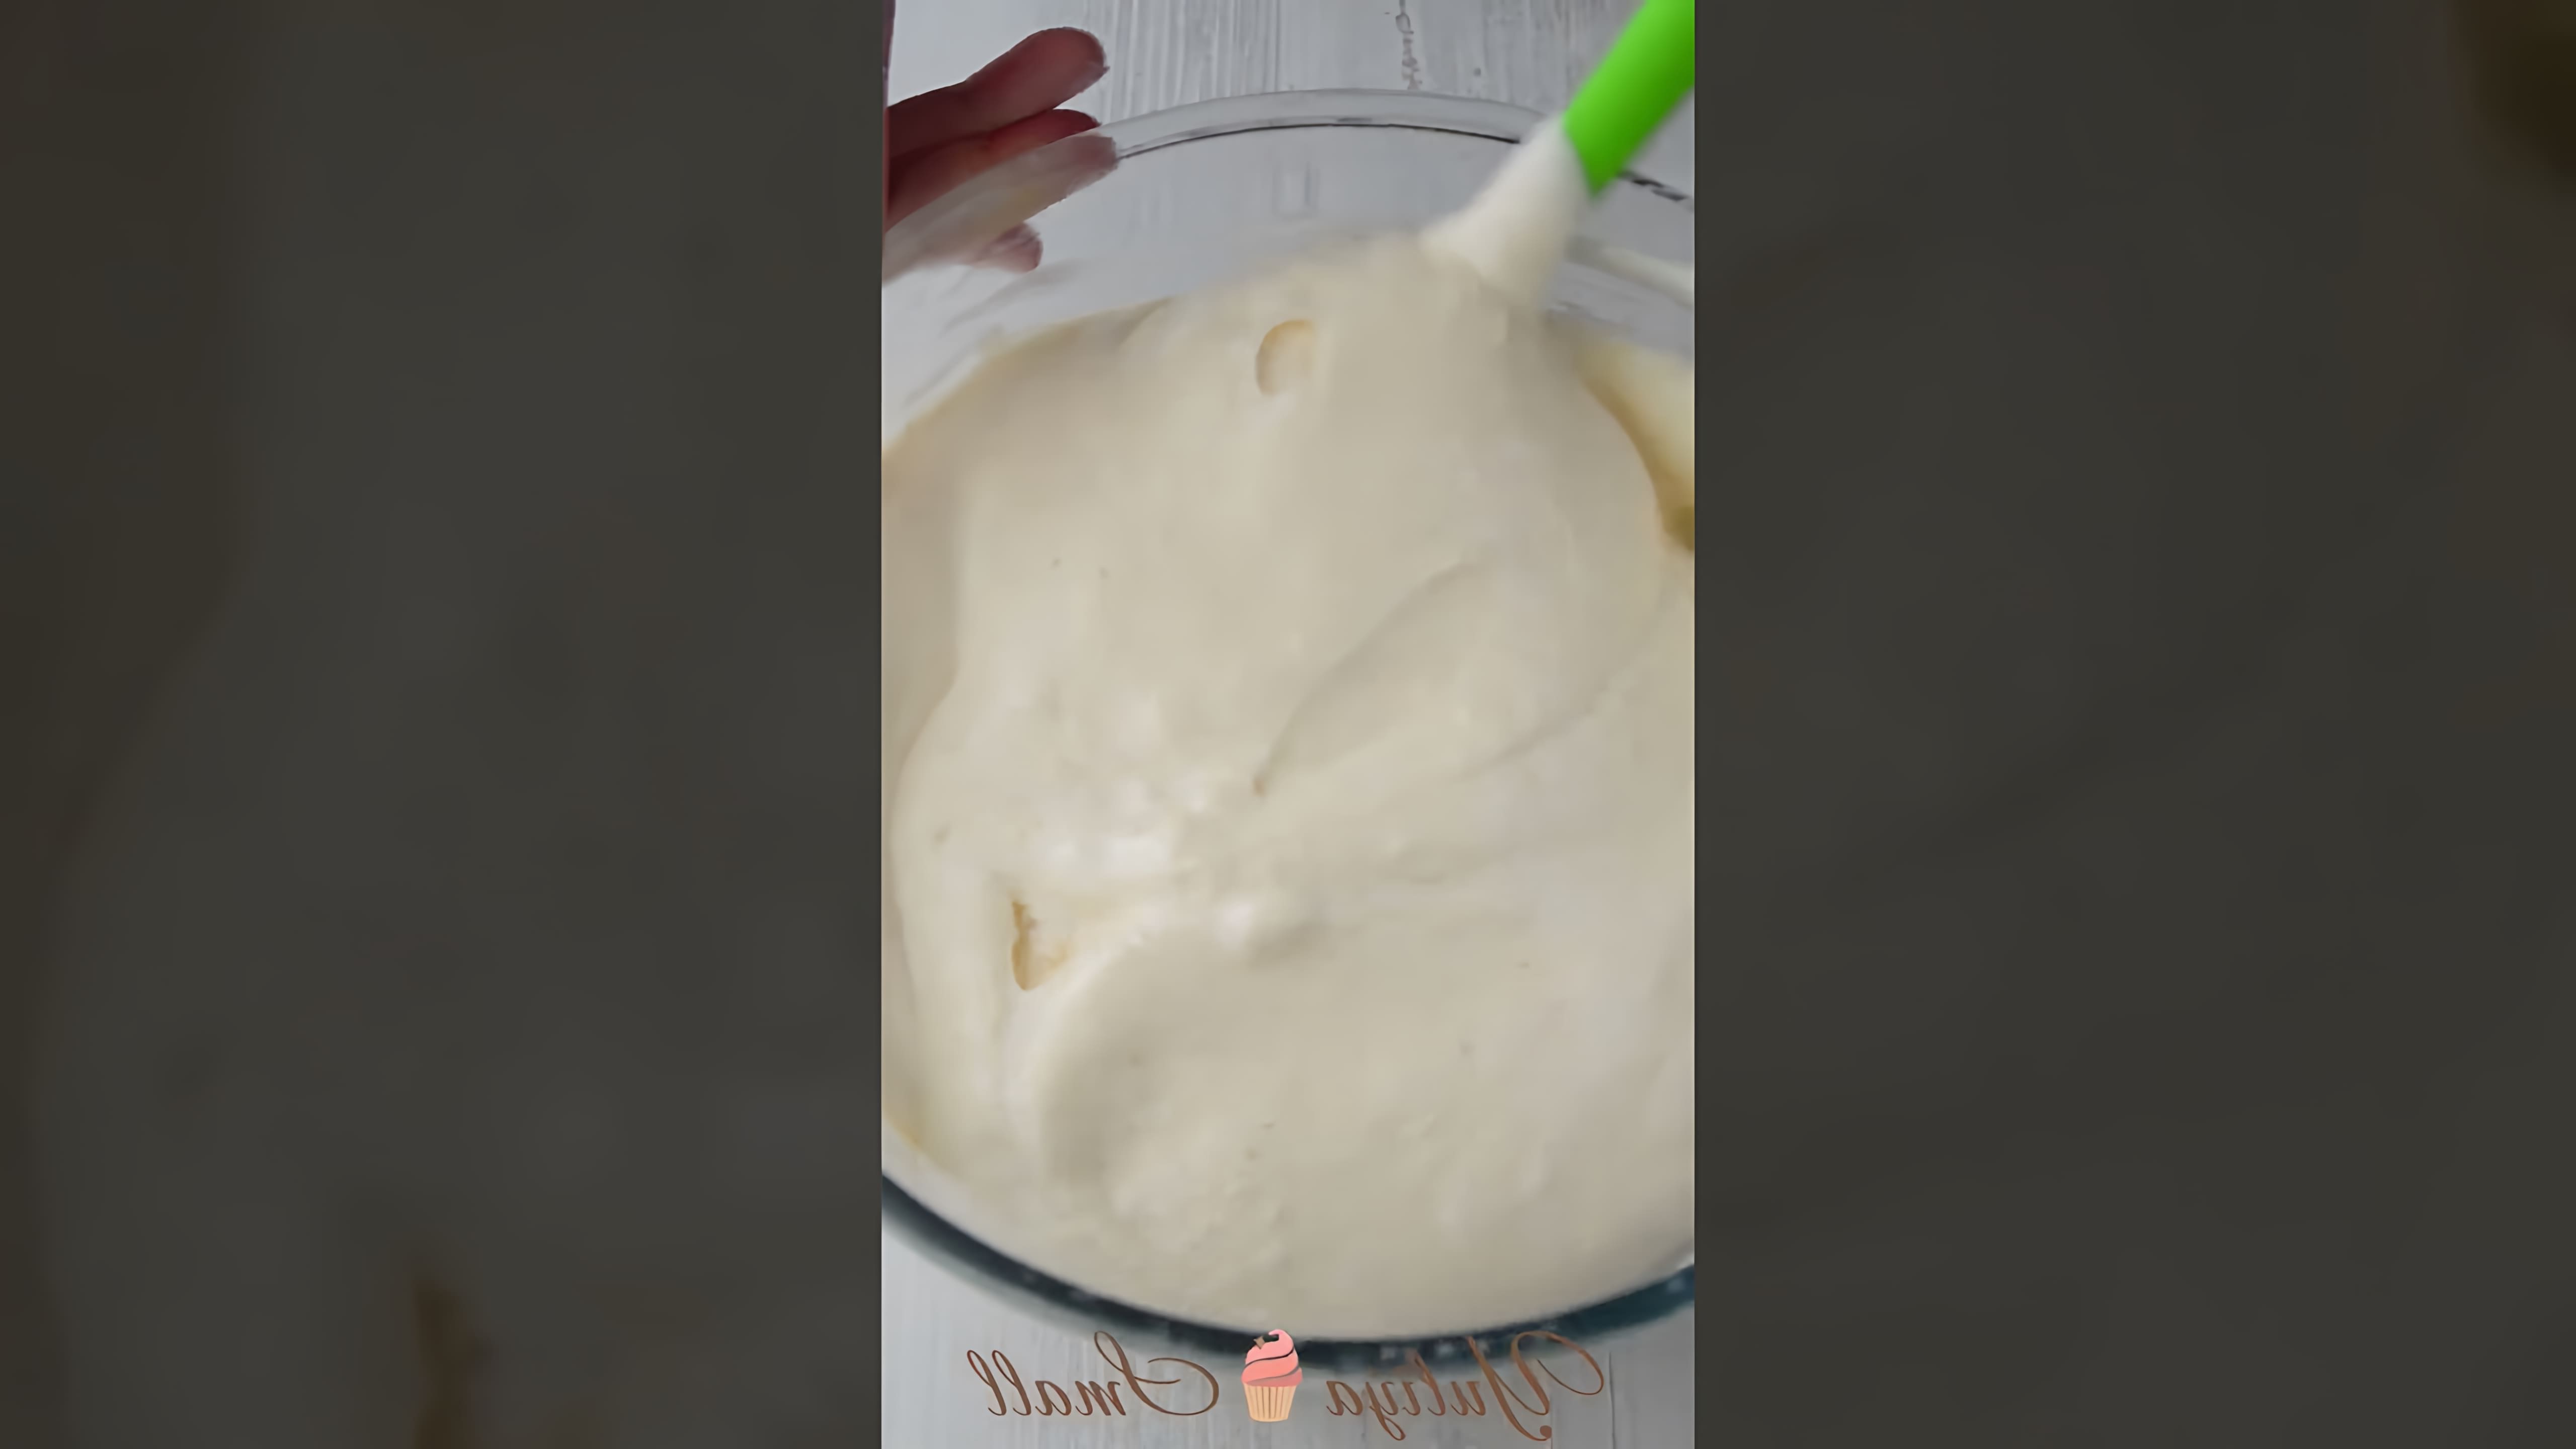 В этом видео демонстрируется рецепт приготовления десерта тирамису в виде рулета